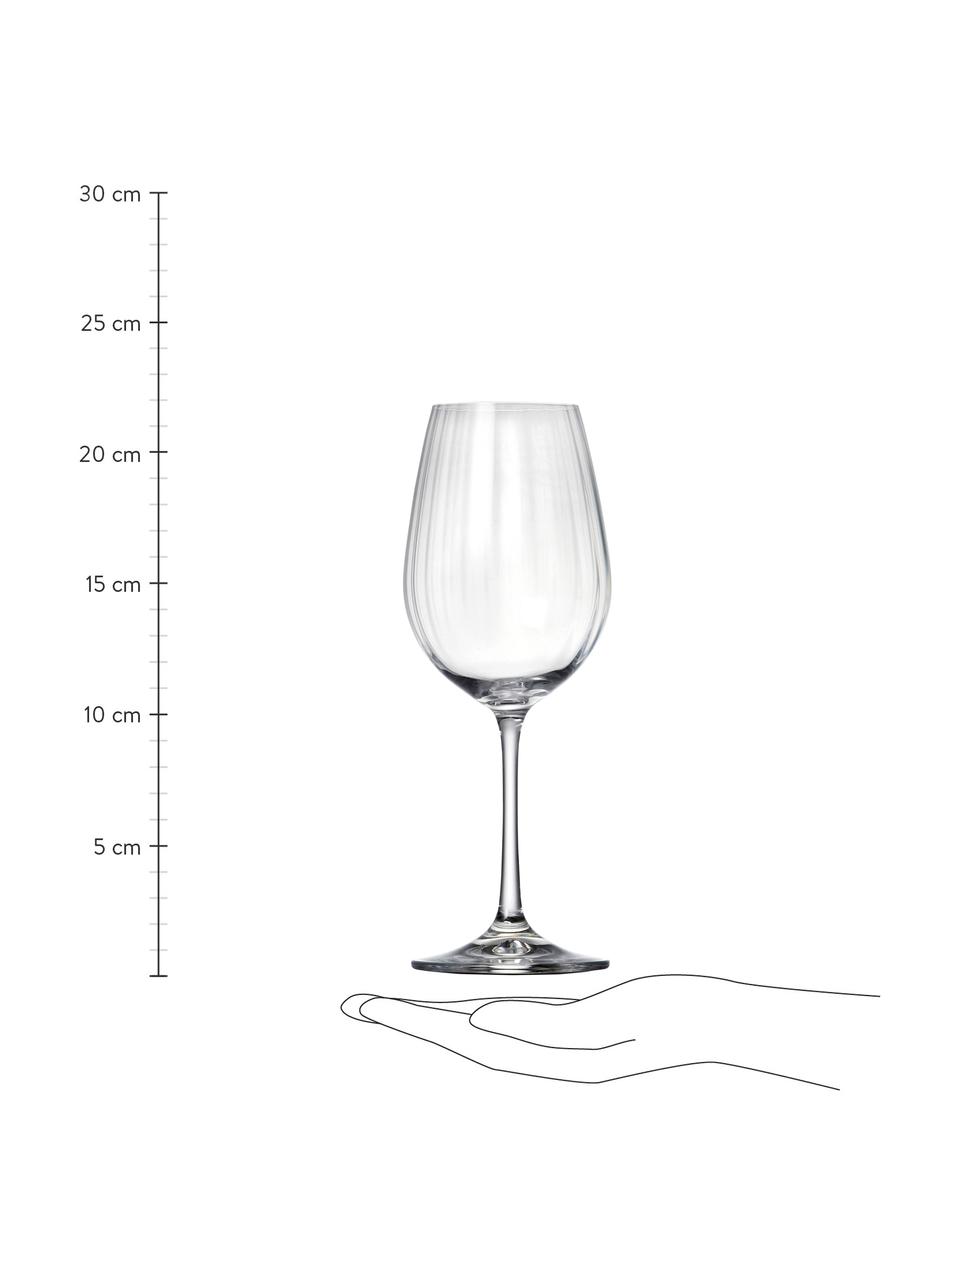 Kristall-Weißweingläser Romance mit Rillenrelief, 6 Stück, Kristallglas, Transparent, Ø 9 x H 22 cm